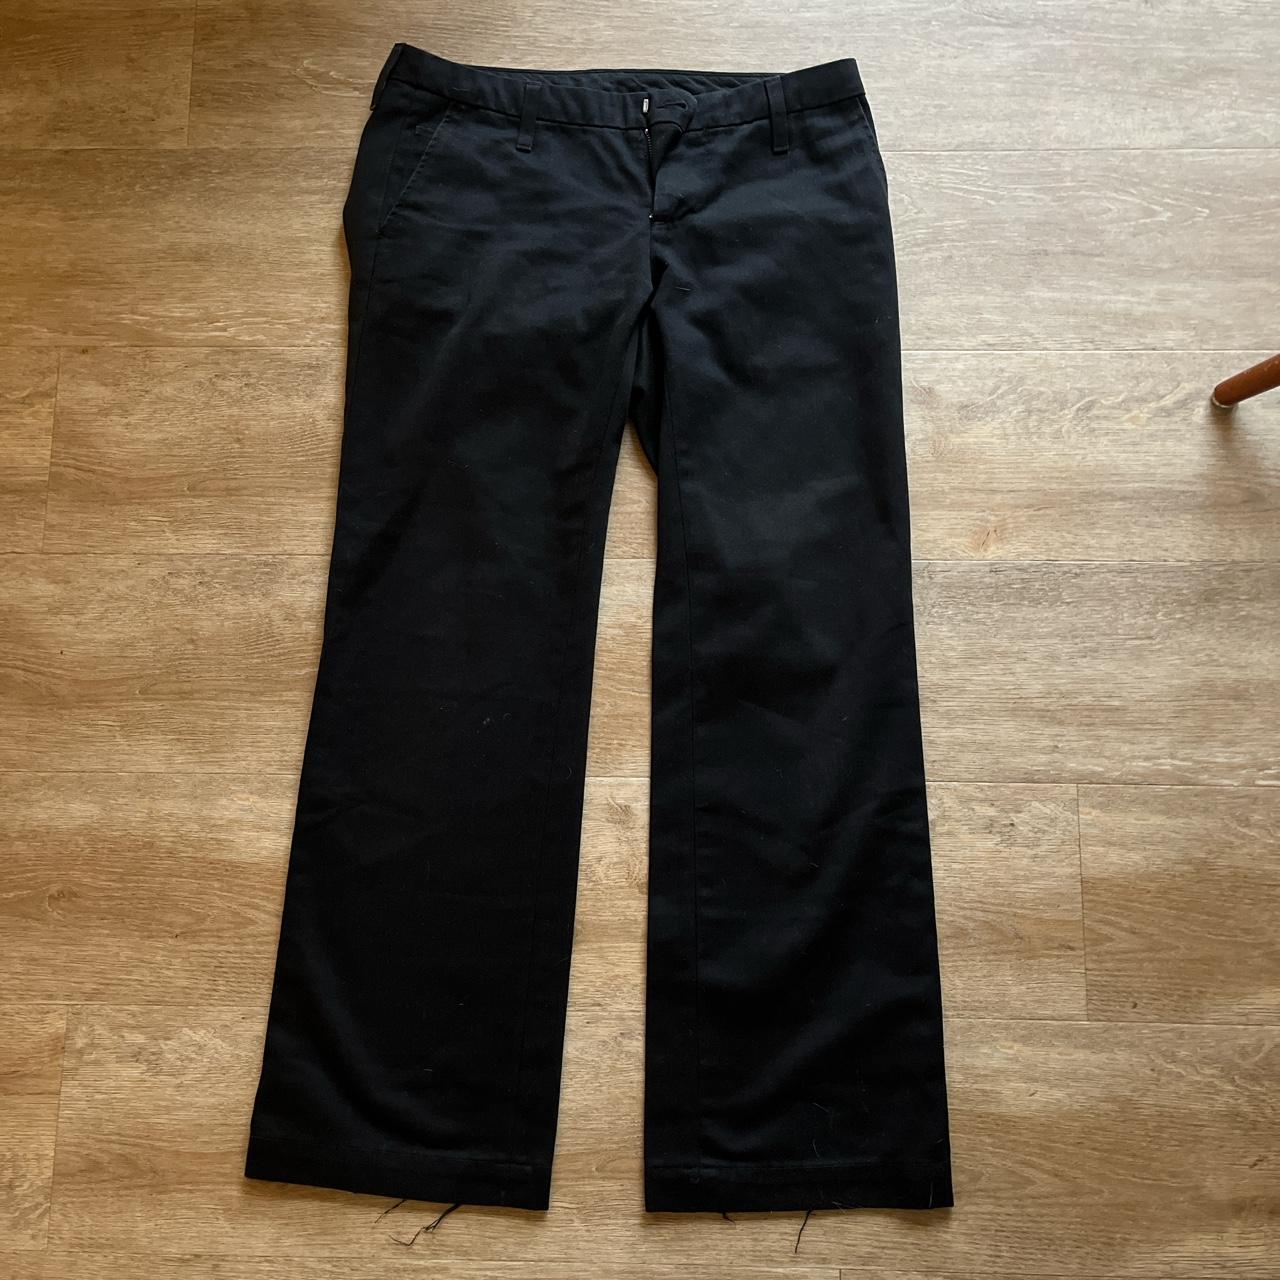 Women’s Carhartt trousers in black in 28 waist 32... - Depop